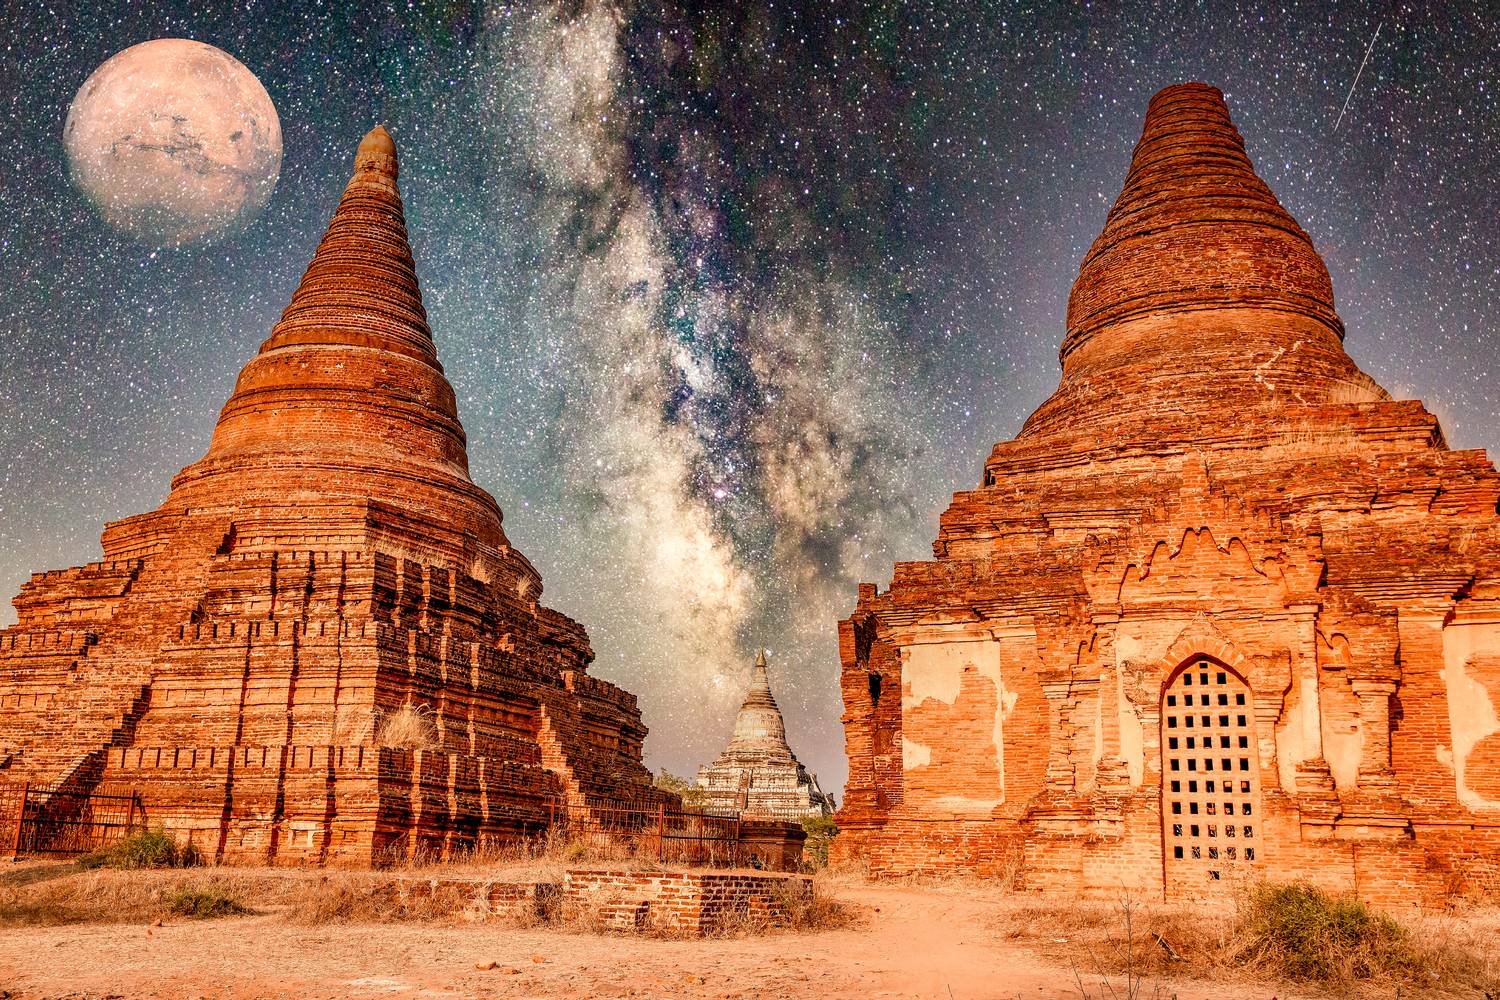 Myanmar in Space, Tempel, Himmel und Mond  de Miro May